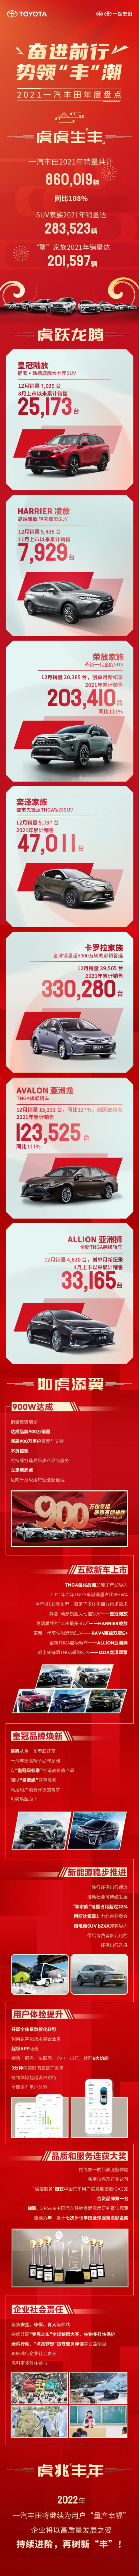 一汽丰田最新销量公布 全年销量突破86万辆